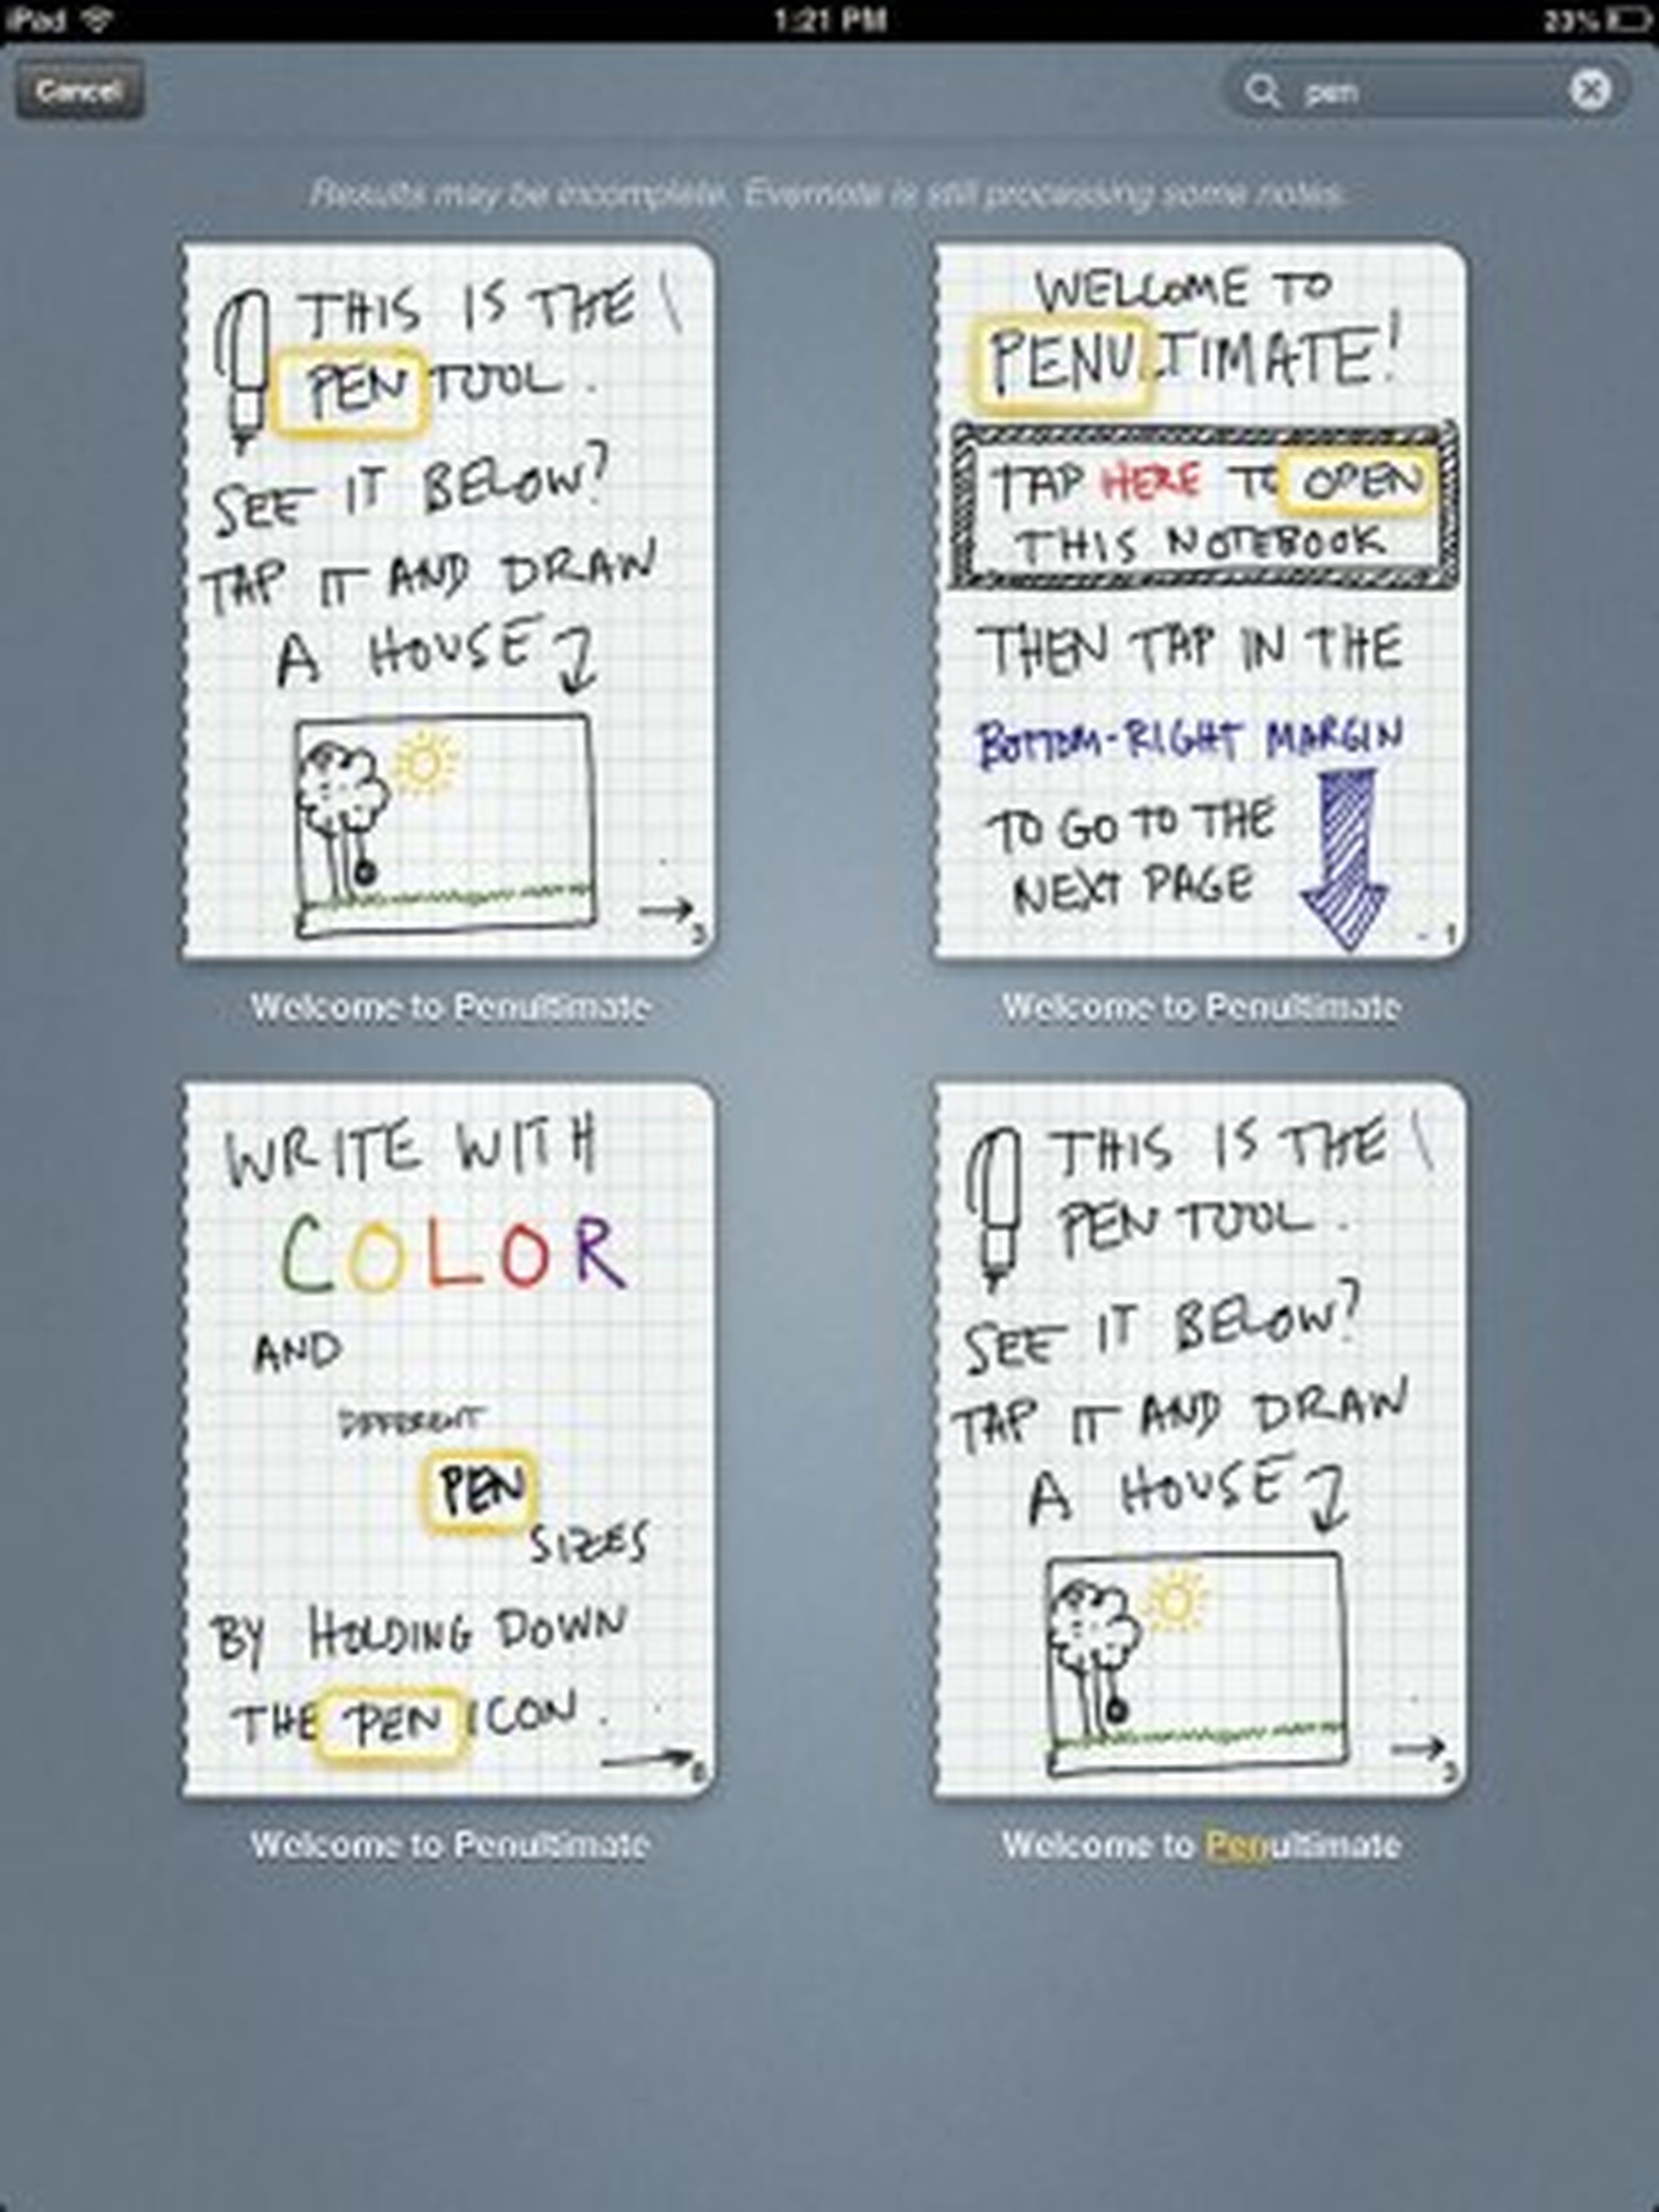 Escribe a mano en tu iPad con Penultimate 4